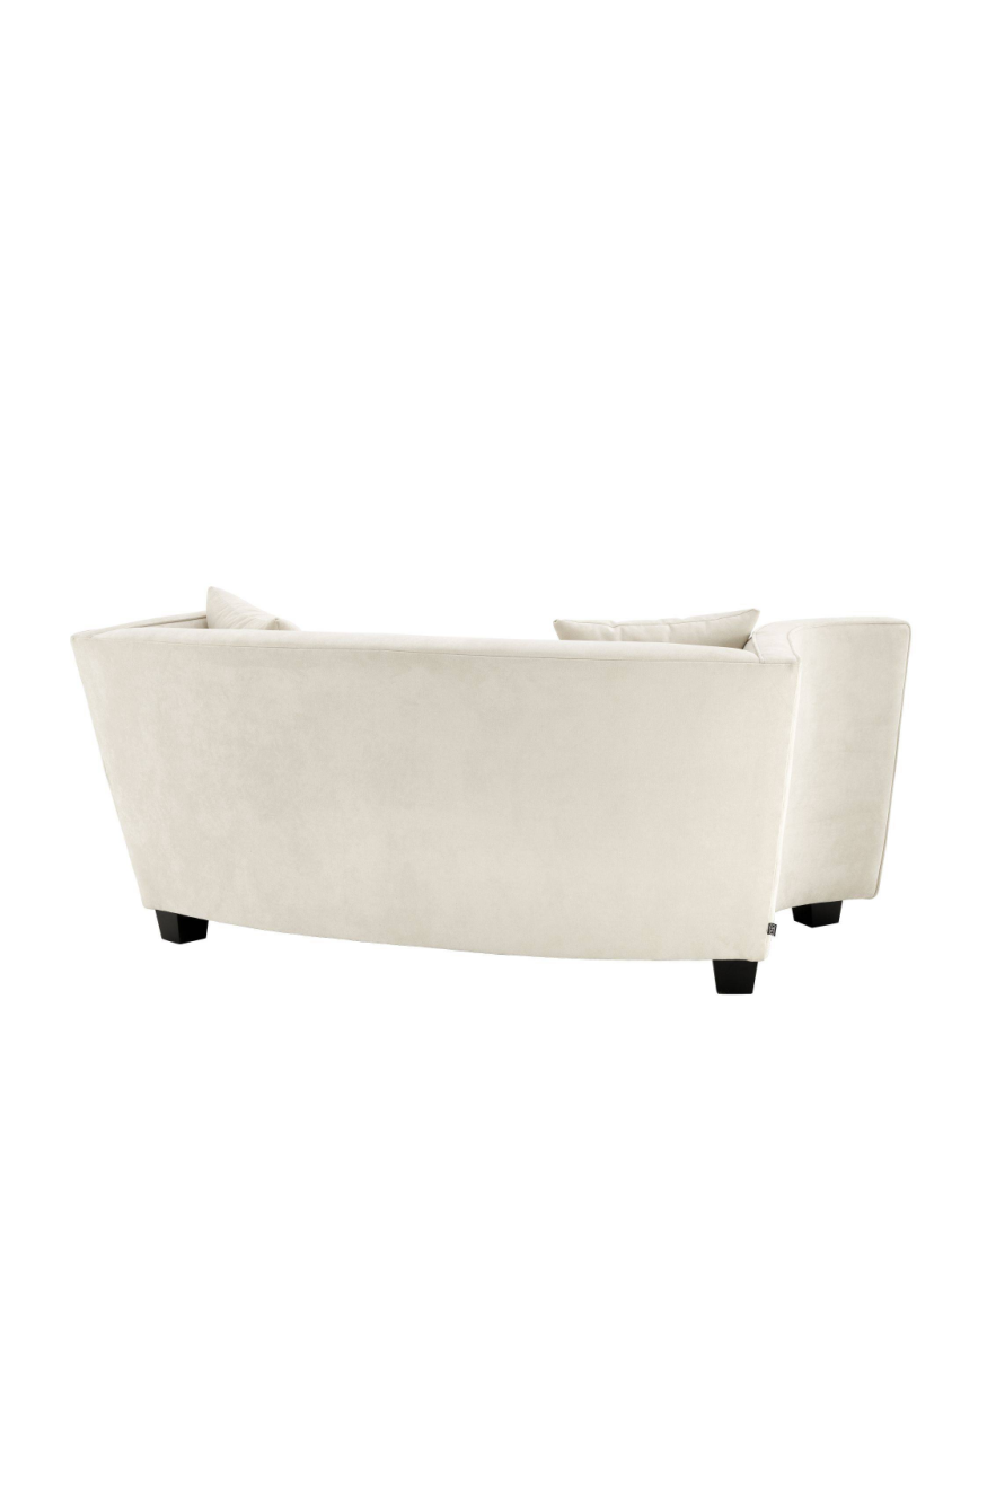 White Velvet Curved Sofa | Eichholtz Giulietta | Oroa.com